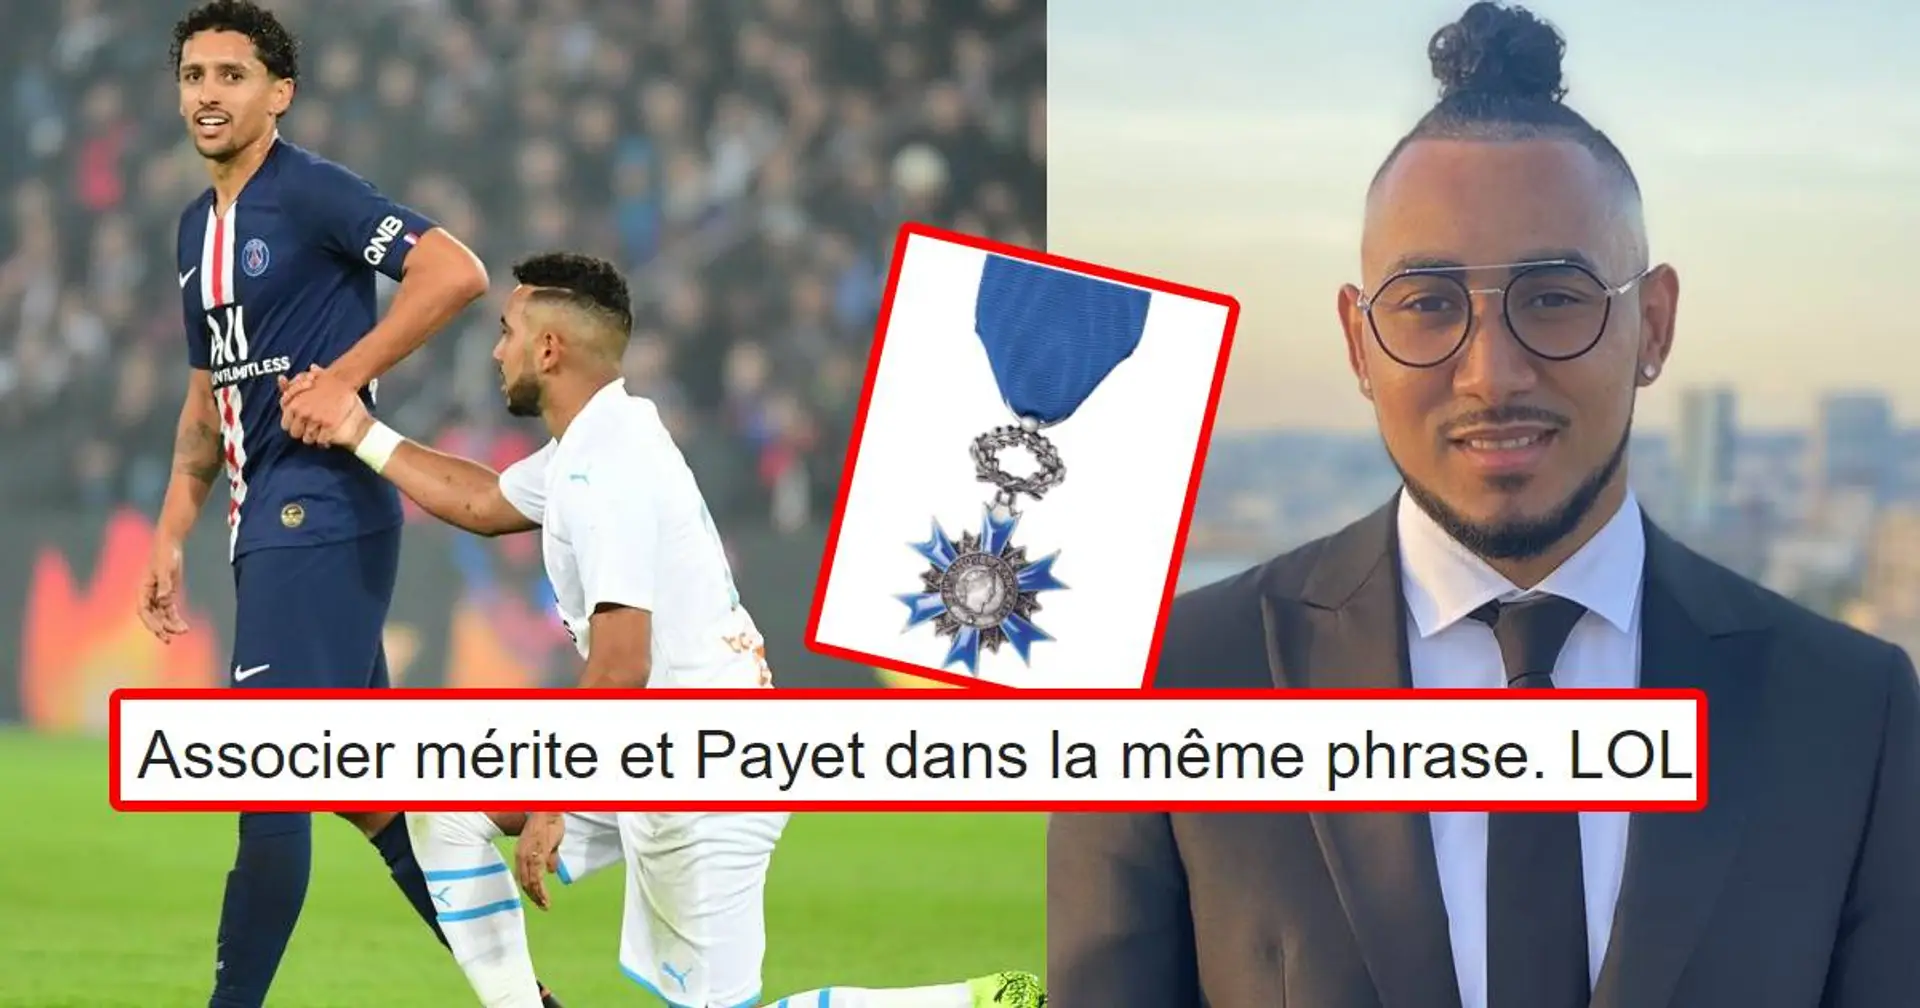 "Pour sa persévérance dans la quête de son 1er trophée": Les fans réagissent au titre honorifique reçu par Payet